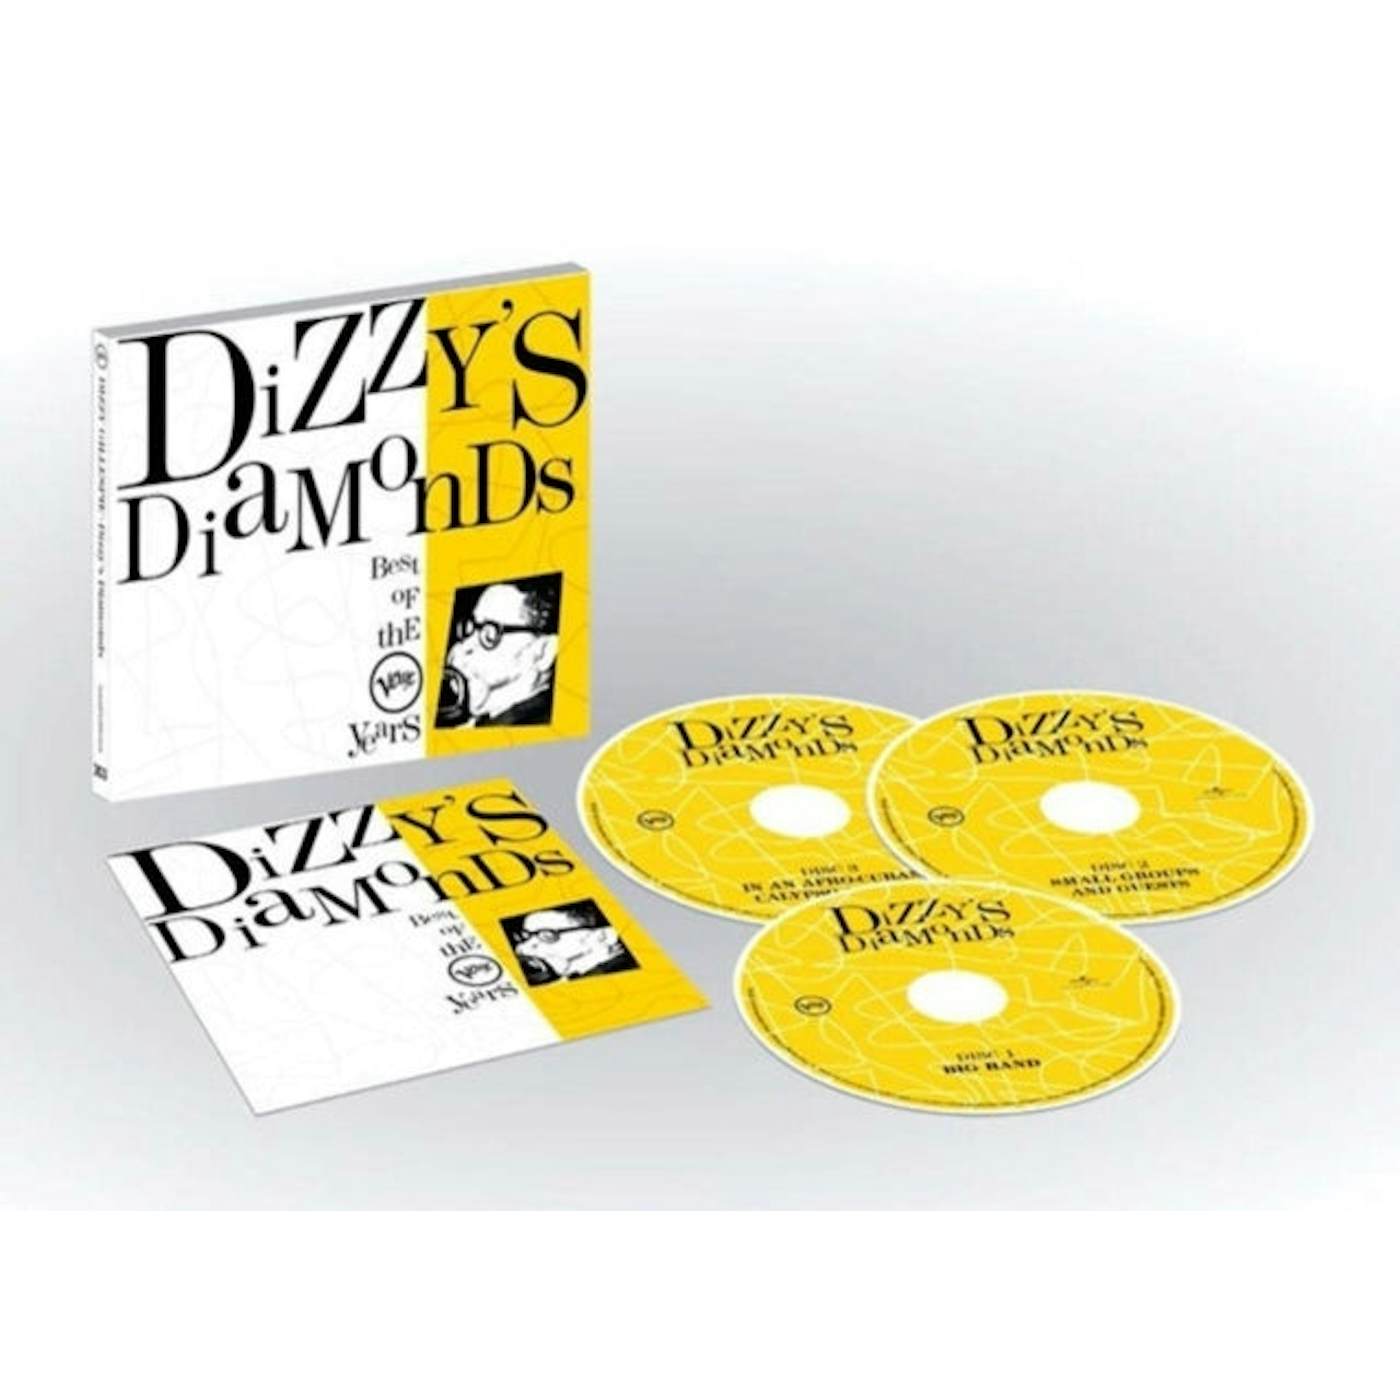 Dizzy Gillespie CD - Dizzy'S Diamonds